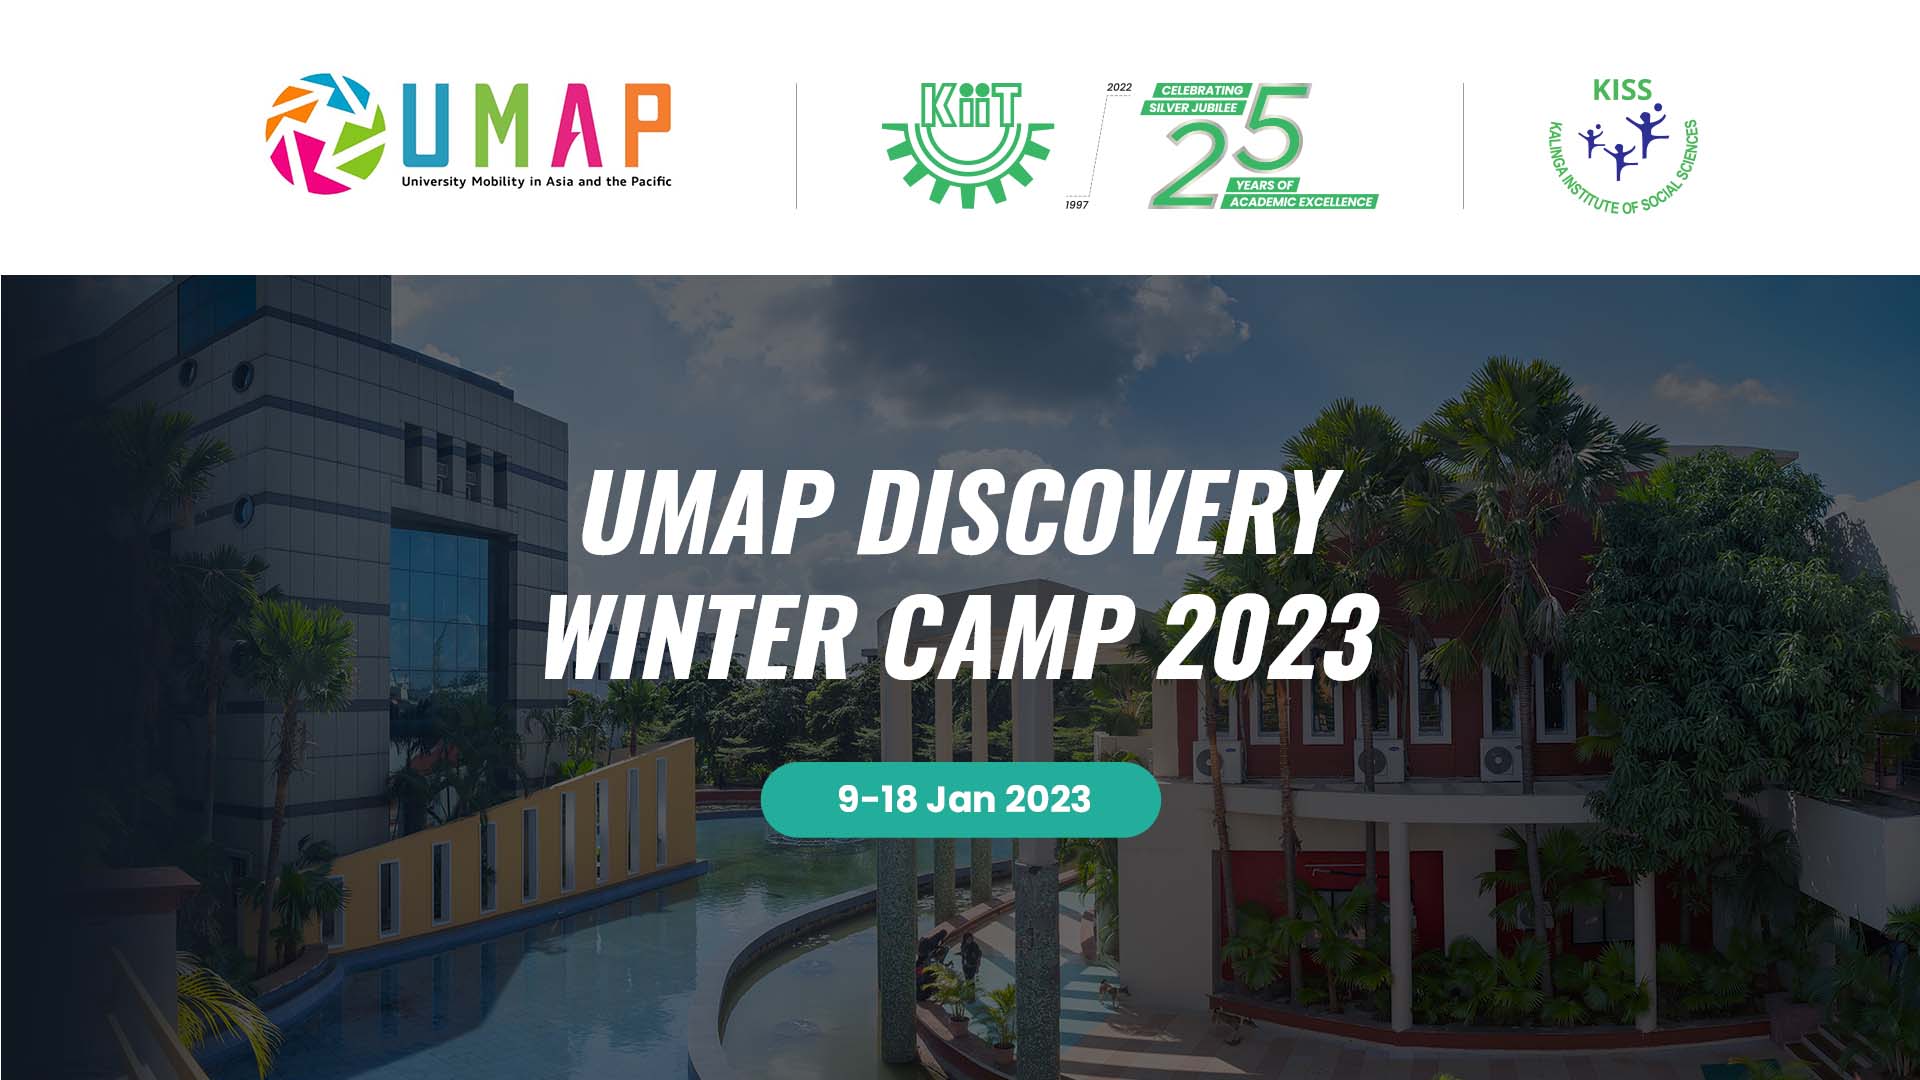 KIIT UMAP Discovery Winter Camp 2023